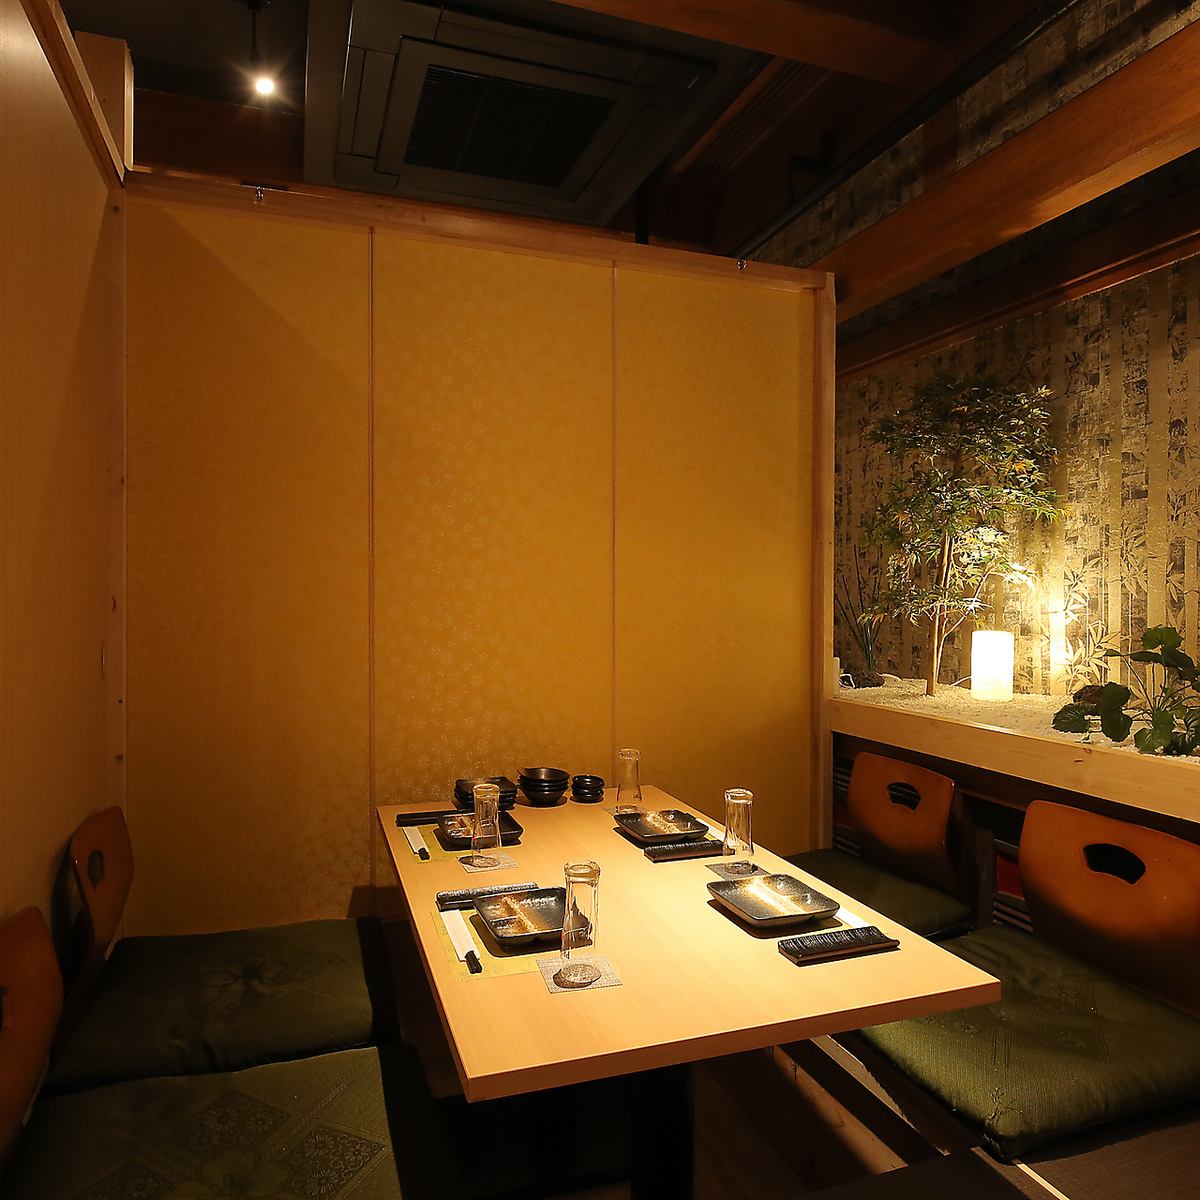 您可以在最多可容纳 2 人的完全日式包房中用餐。